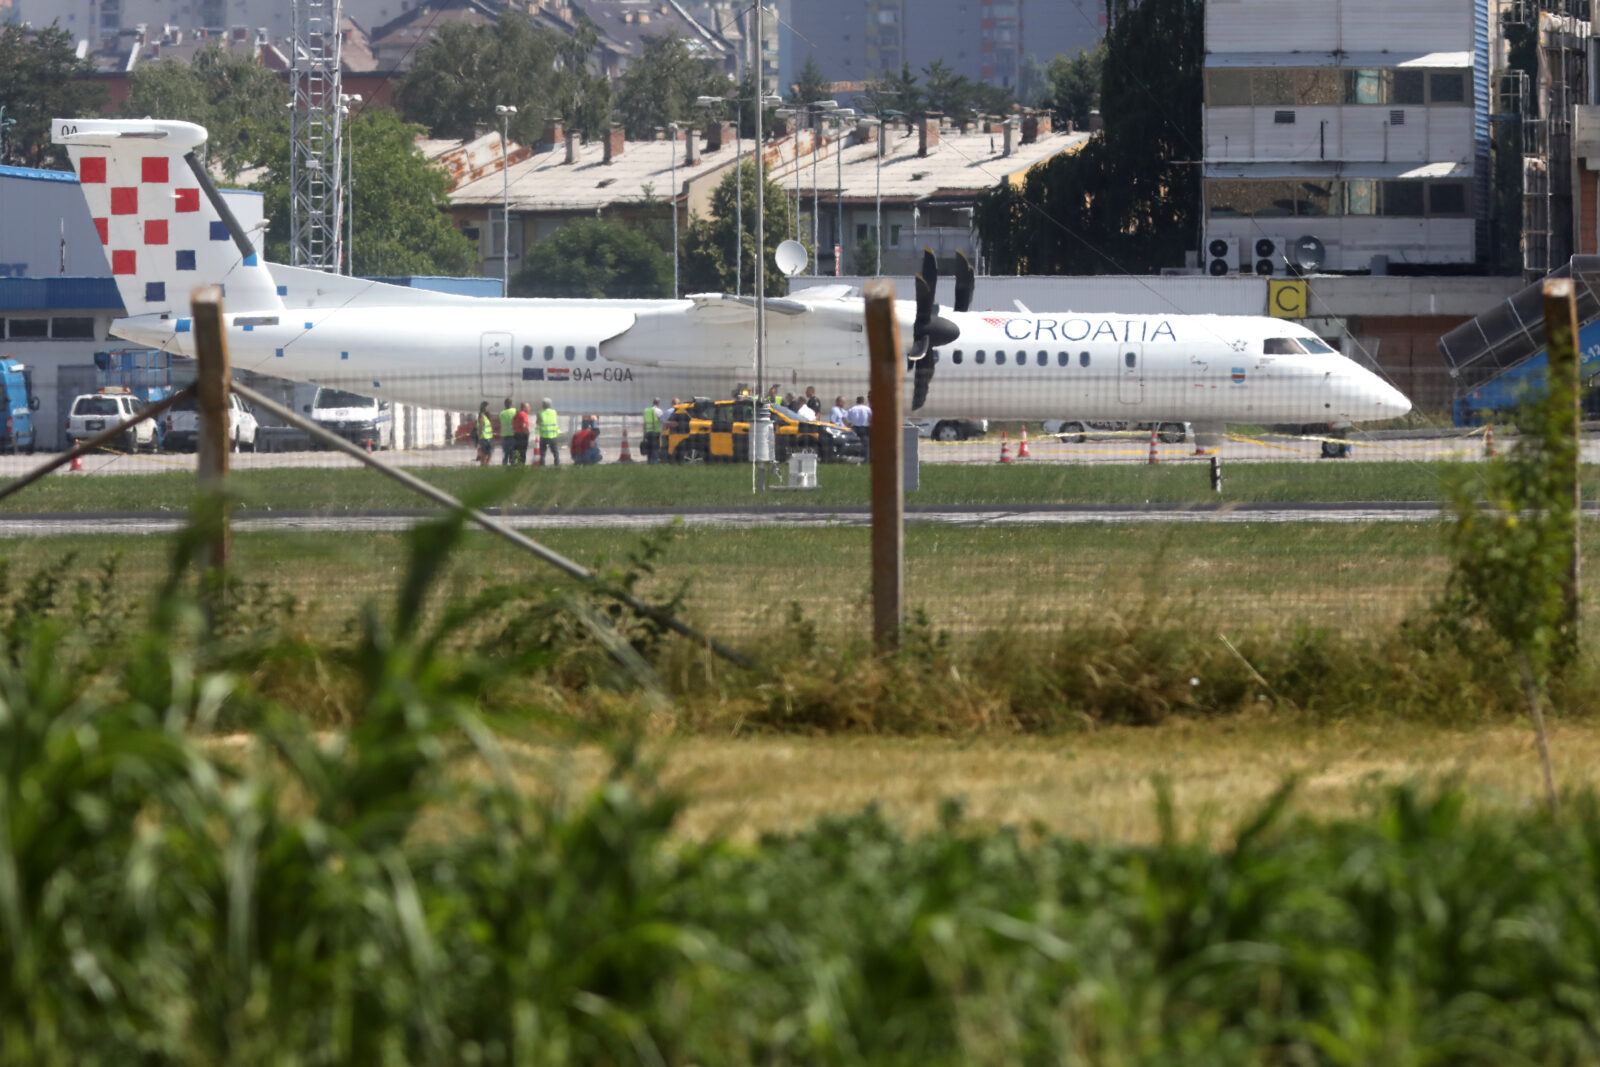 Oštećen zrakoplov Croatia Airlinesa na letu za Sarajevo, sumnja se na vatreno oružje